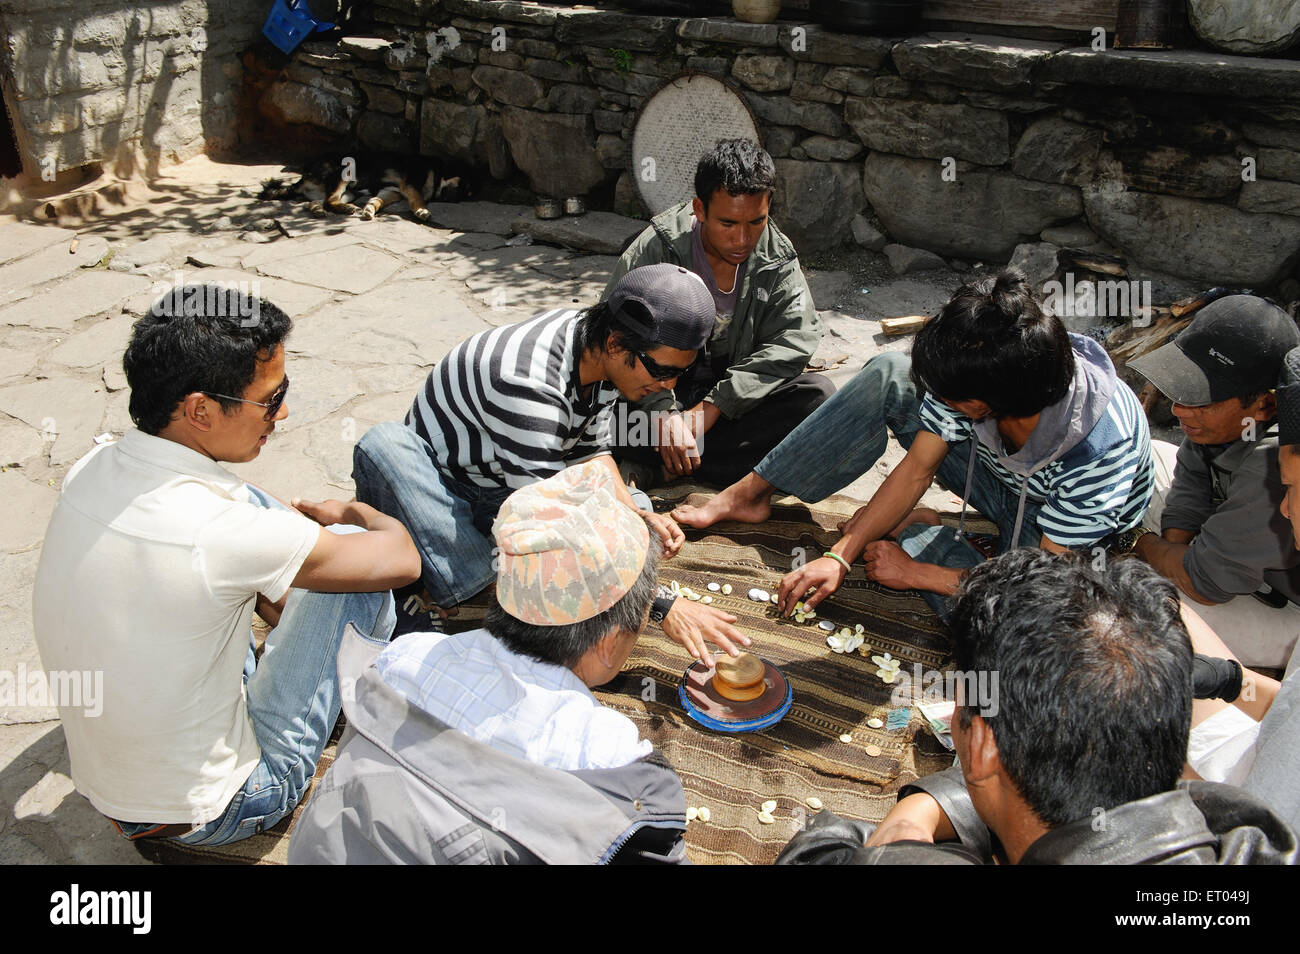 Les gens jouant avec des coquillages ; Népal ; Asie NOMR Banque D'Images